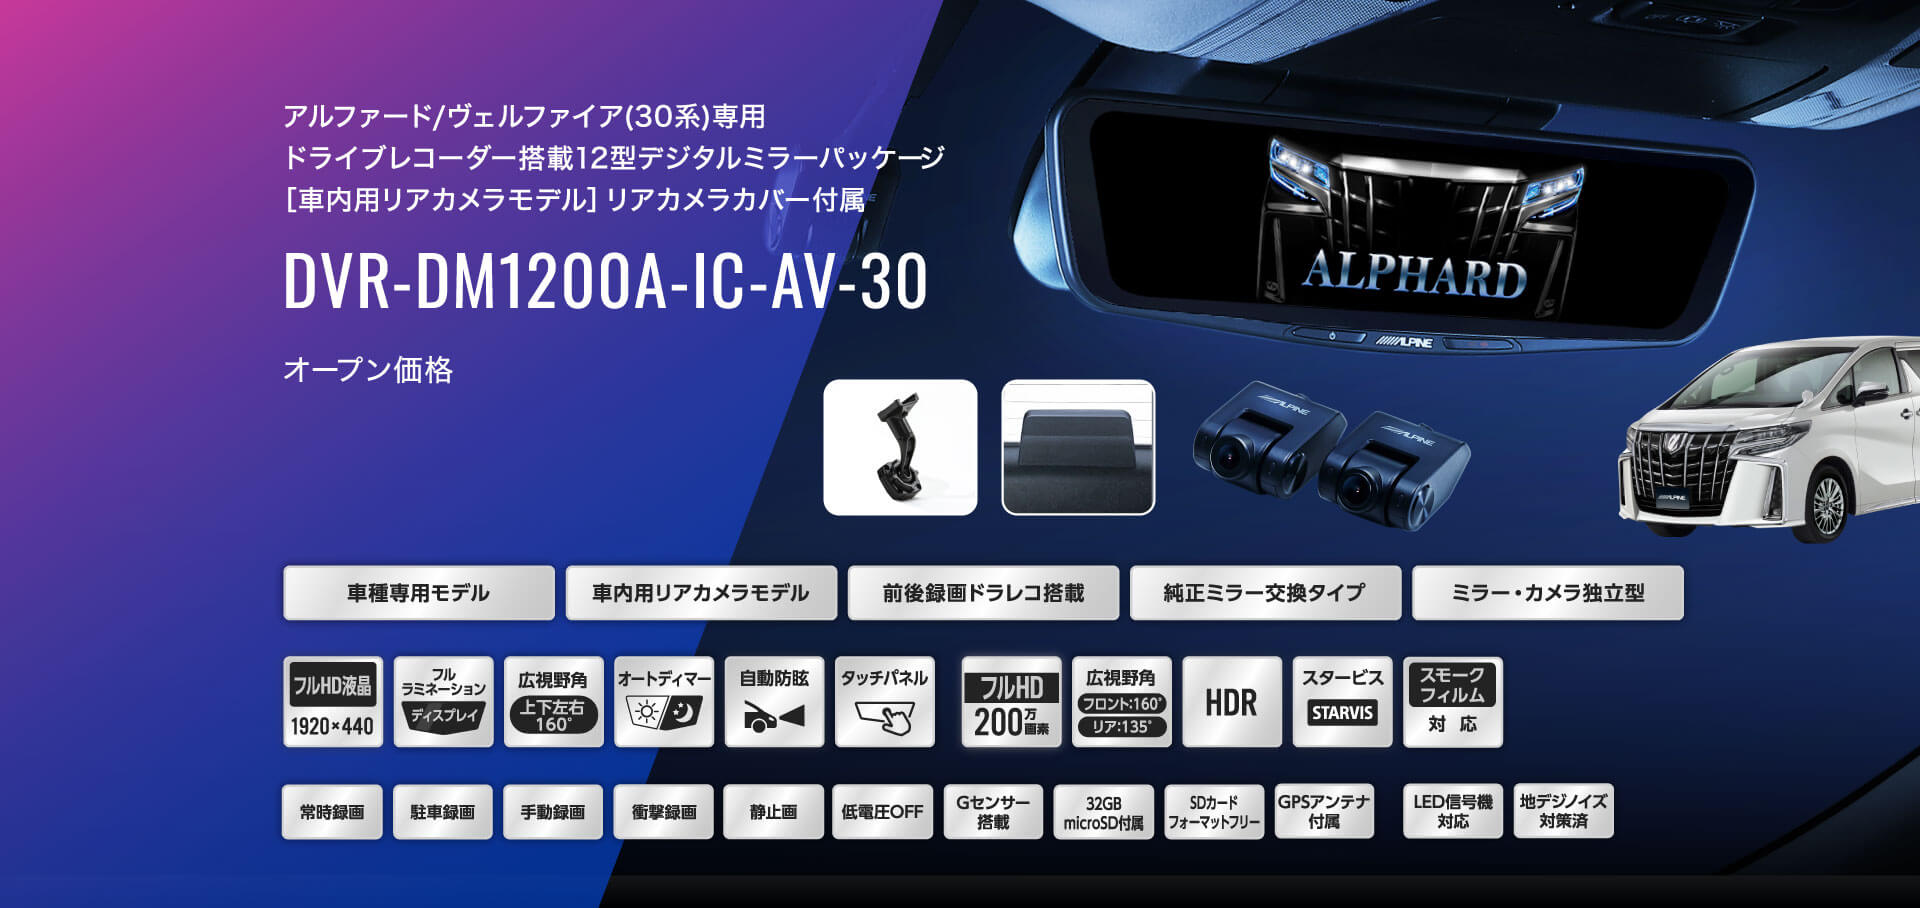 アルファード/ヴェルファイア(30系)専用 ドライブレコーダー搭載12型デジタルミラーパッケージ［車内用リアカメラモデル］リアカメラカバー付属 DVR-DM1200A-IC-AV-30 オープン価格